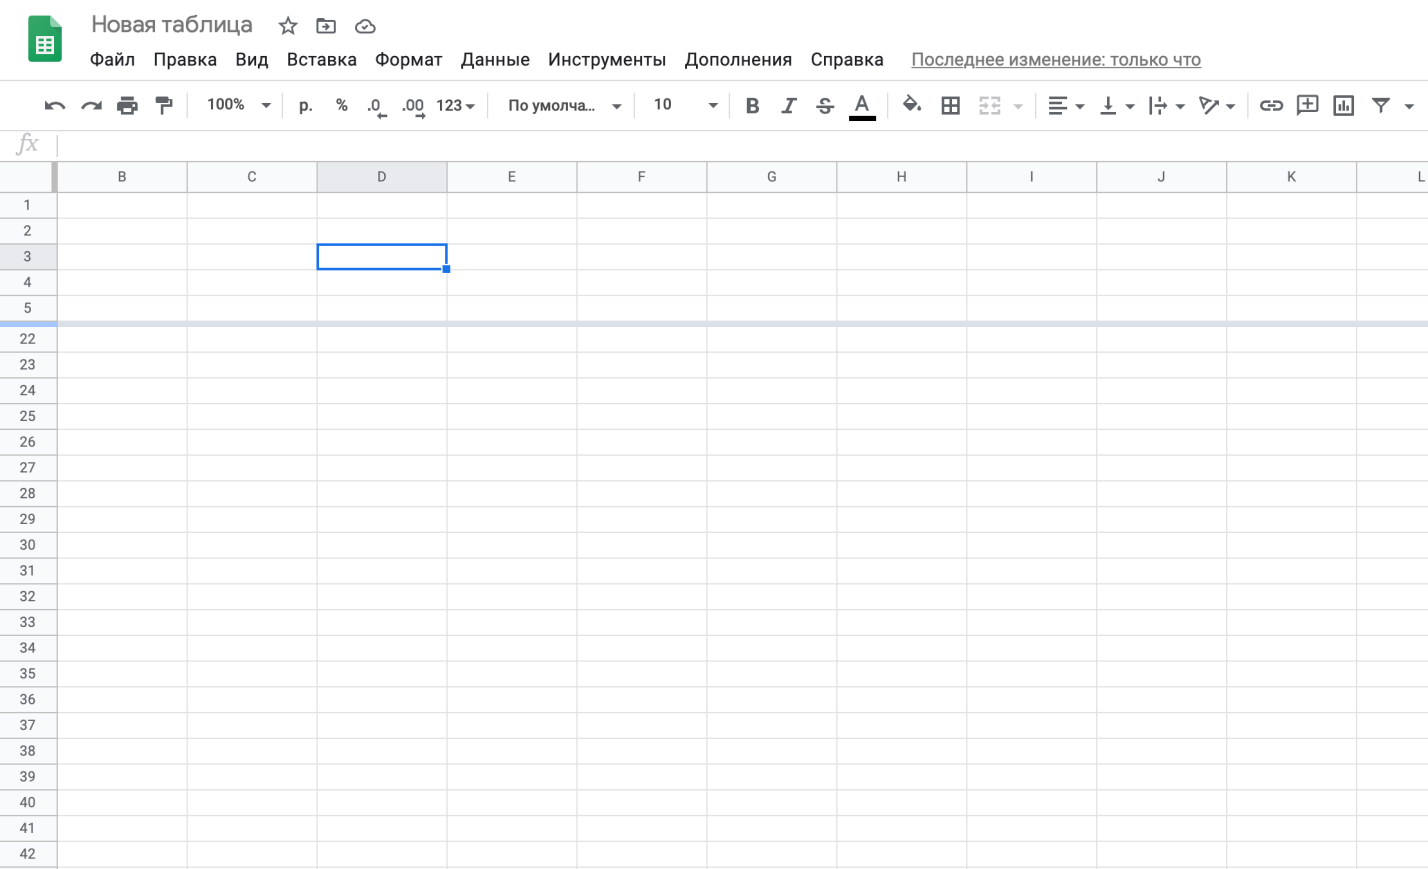 Gmail не предлагает инструмента для добавления таблиц в ваши электронные письма Однако вы можете создавать таблицы в Google Таблицах и перемещать их в свои